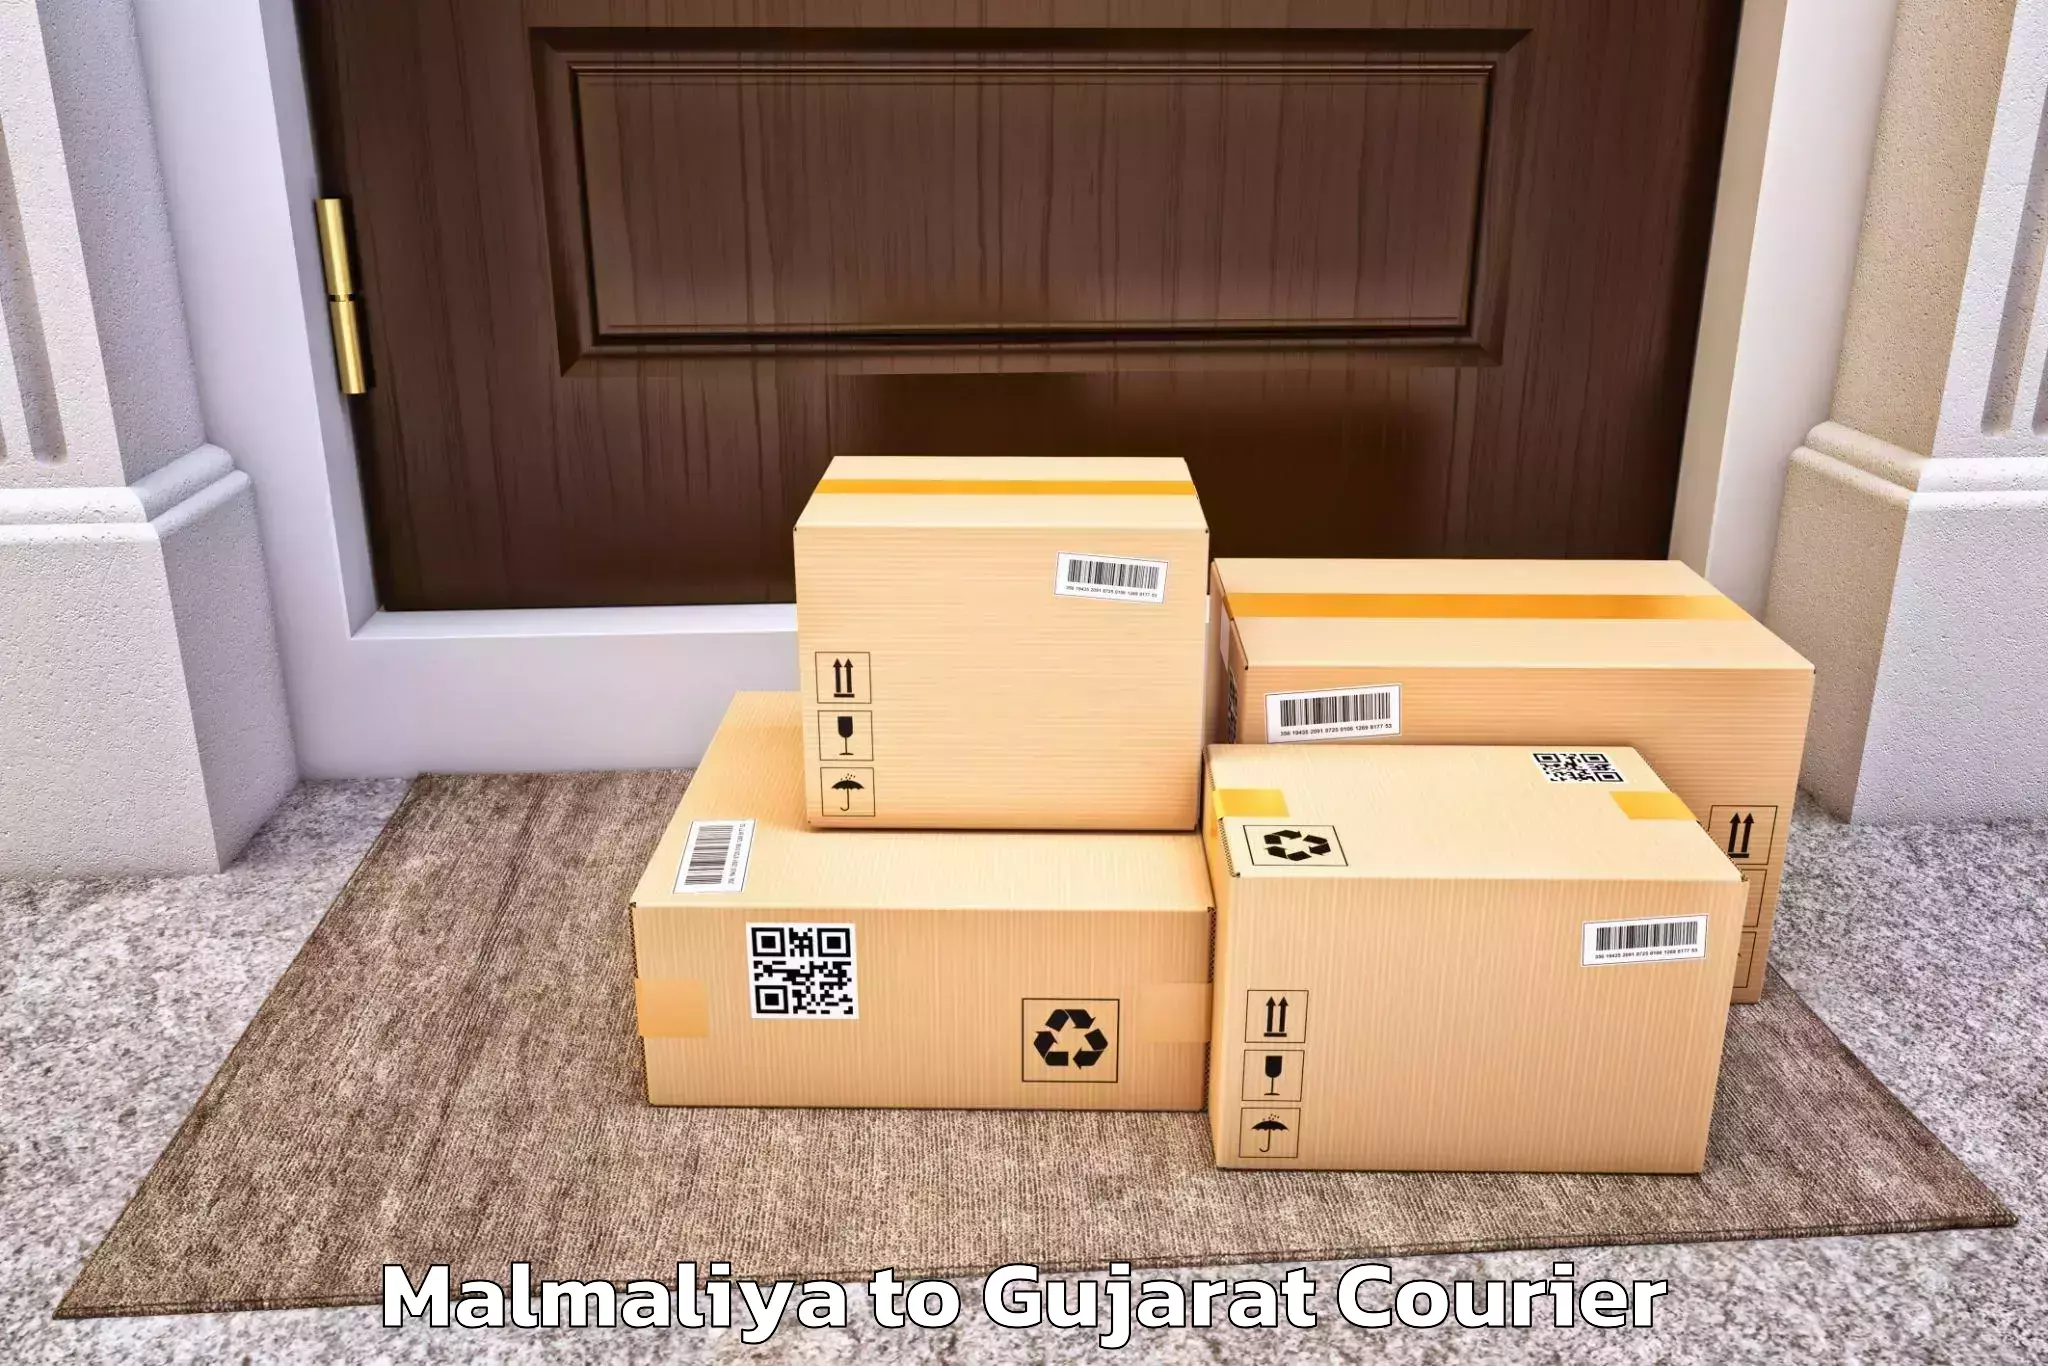 Furniture shipping services in Malmaliya to Ahmedabad